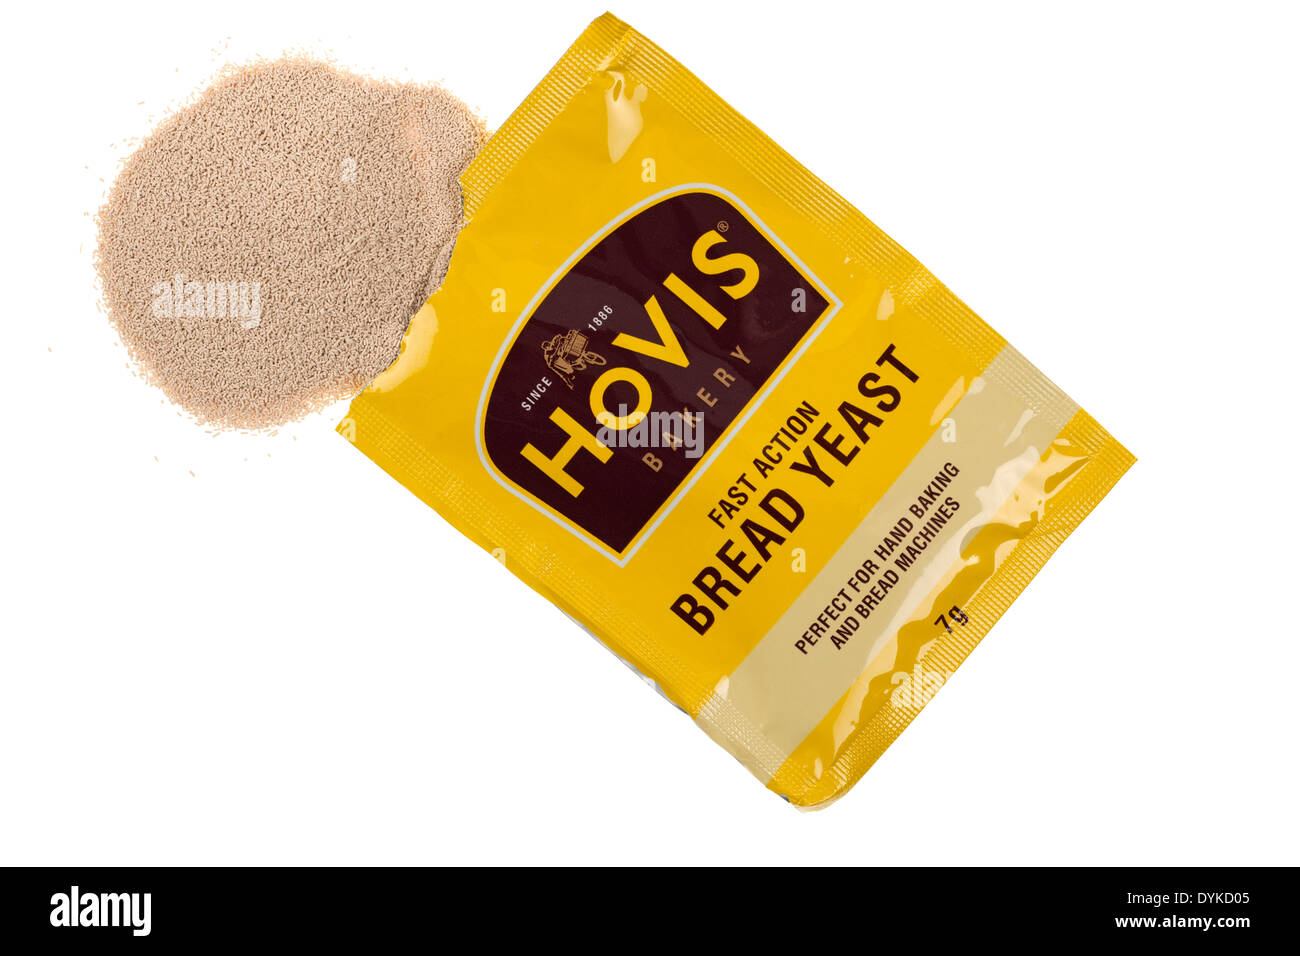 Petit gramme 7 sachet de levure à pain action rapide Hovis Banque D'Images